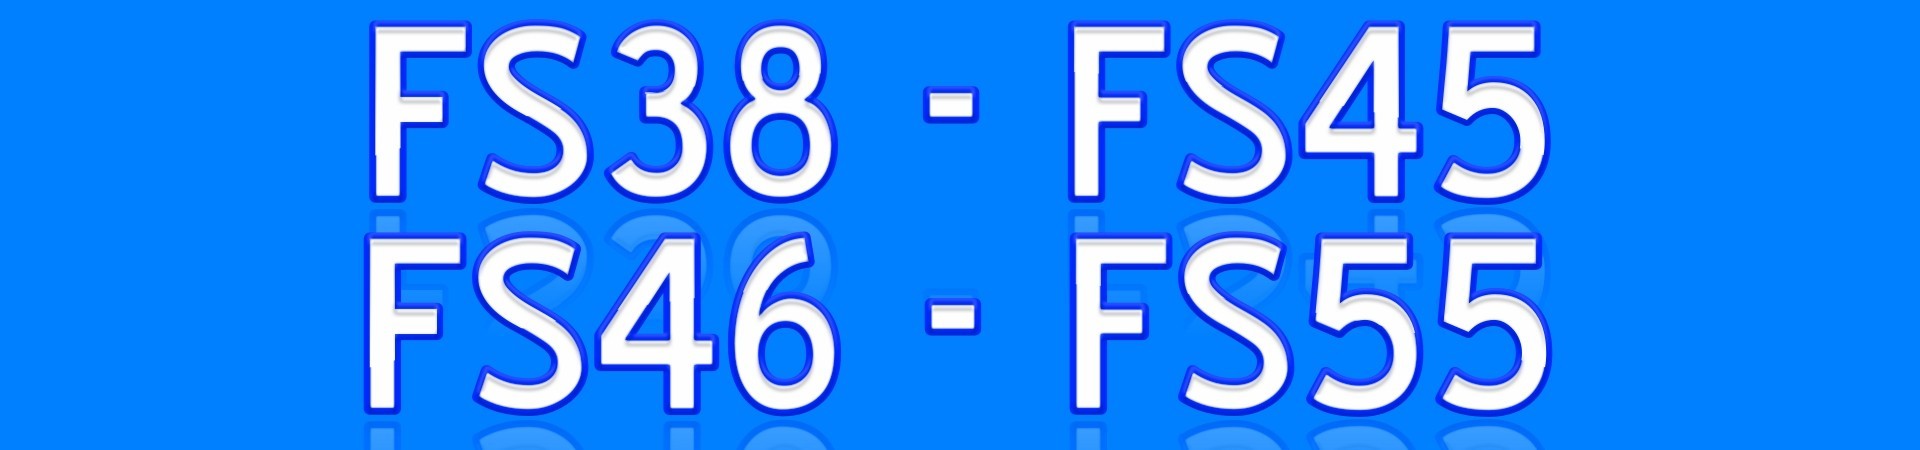 FS38 FS45 FS46 FS55